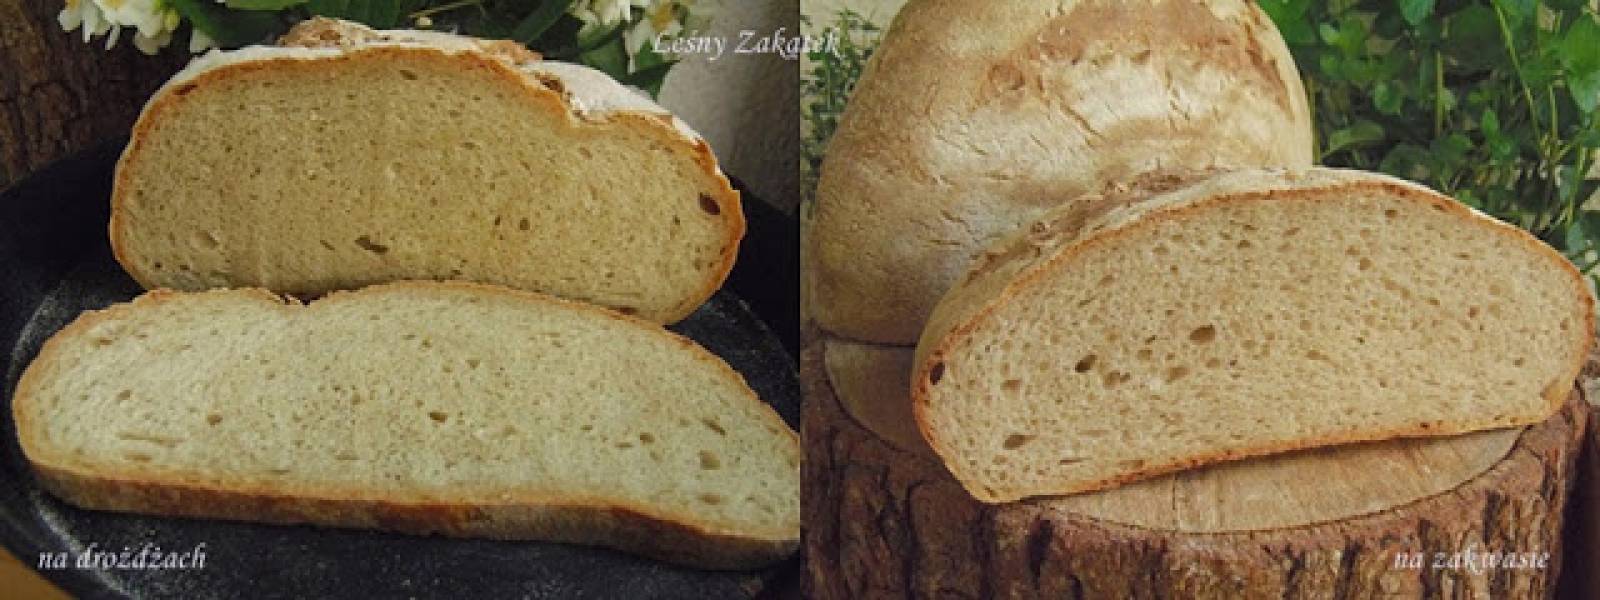 Najprostszy chleb z garnka na zakwasie i na drożdżach